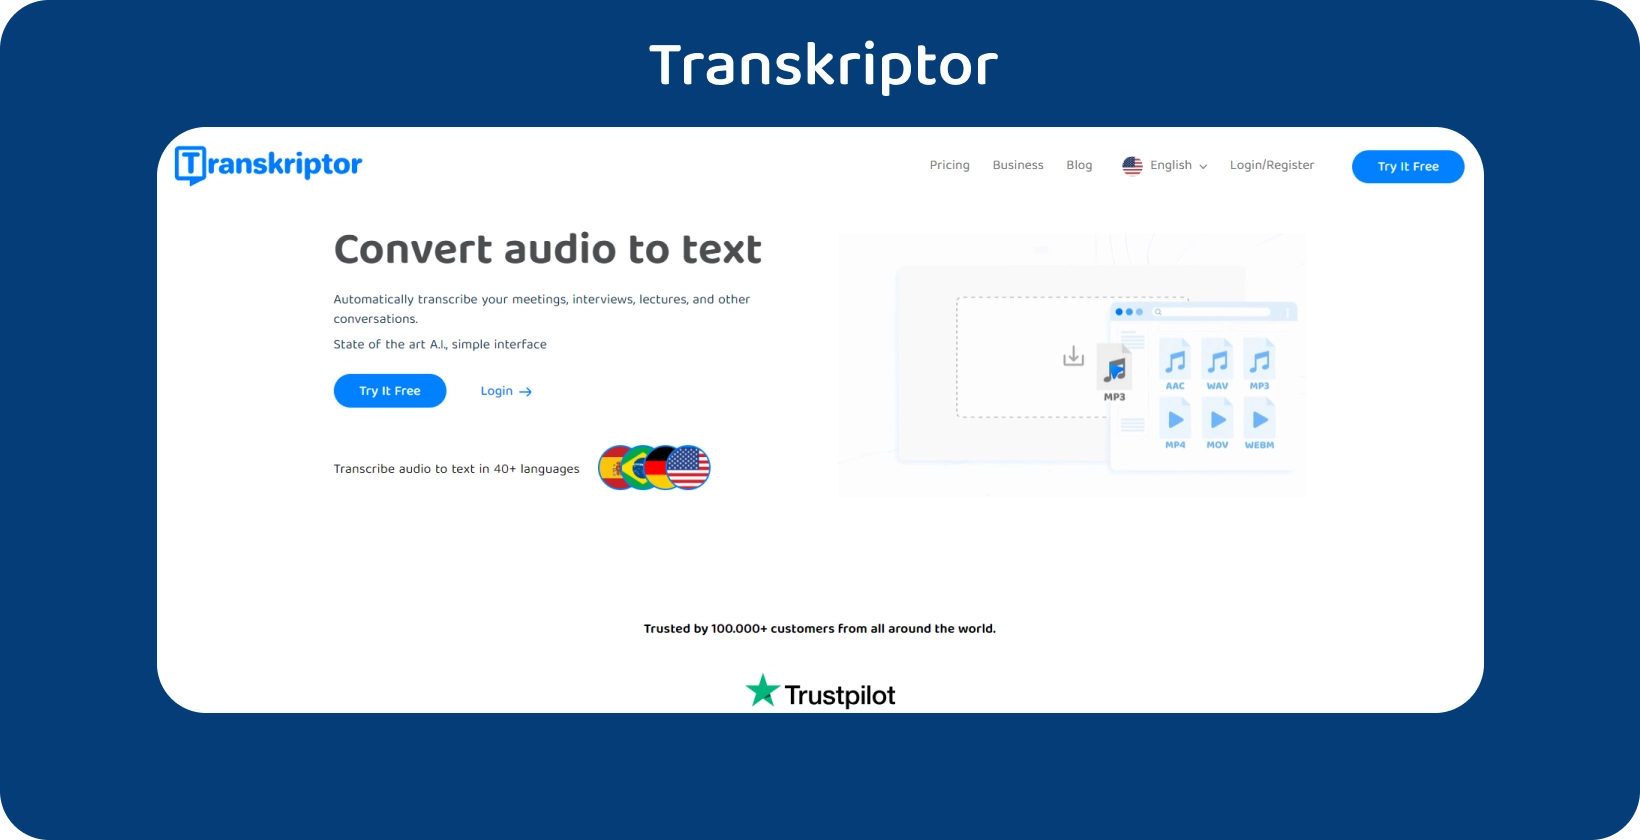 Transkriptor homepage met een duidelijke call-to-action, met audio-naar-teksttranscriptiediensten.